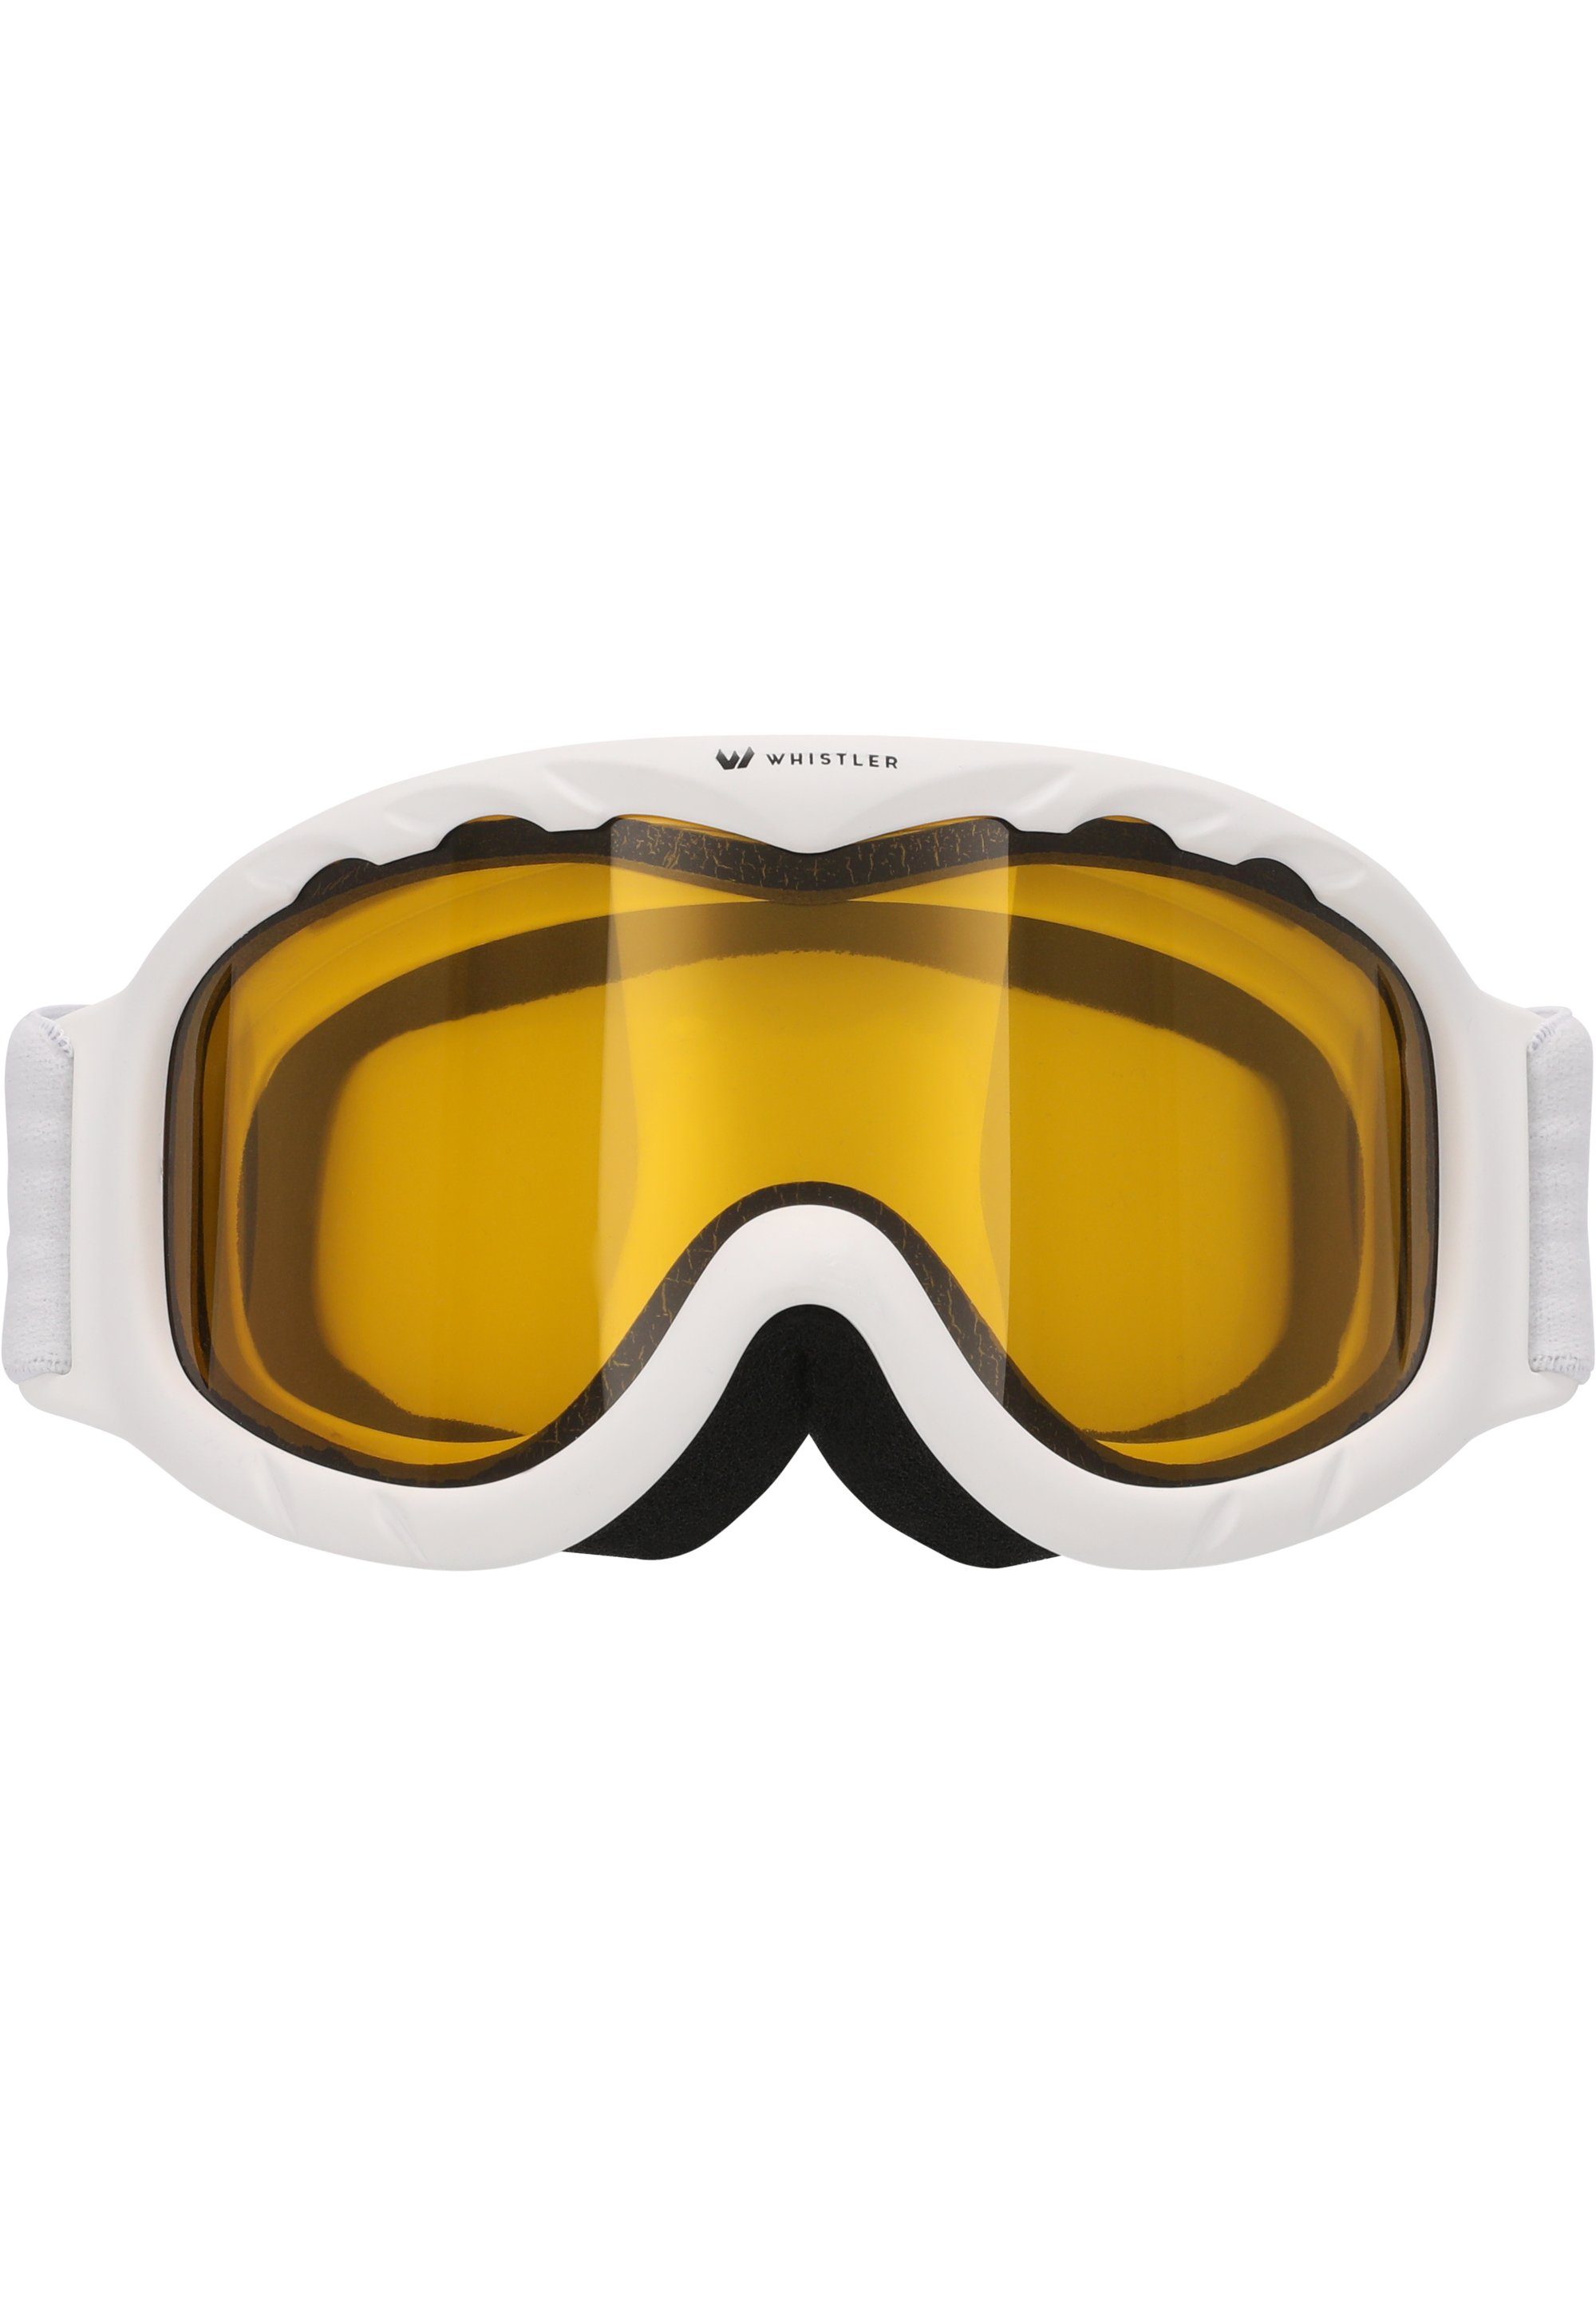 WHISTLER Skibrille WS300 Jr. Ski Goggle, mit Anti-Fog-Beschichtung weiß